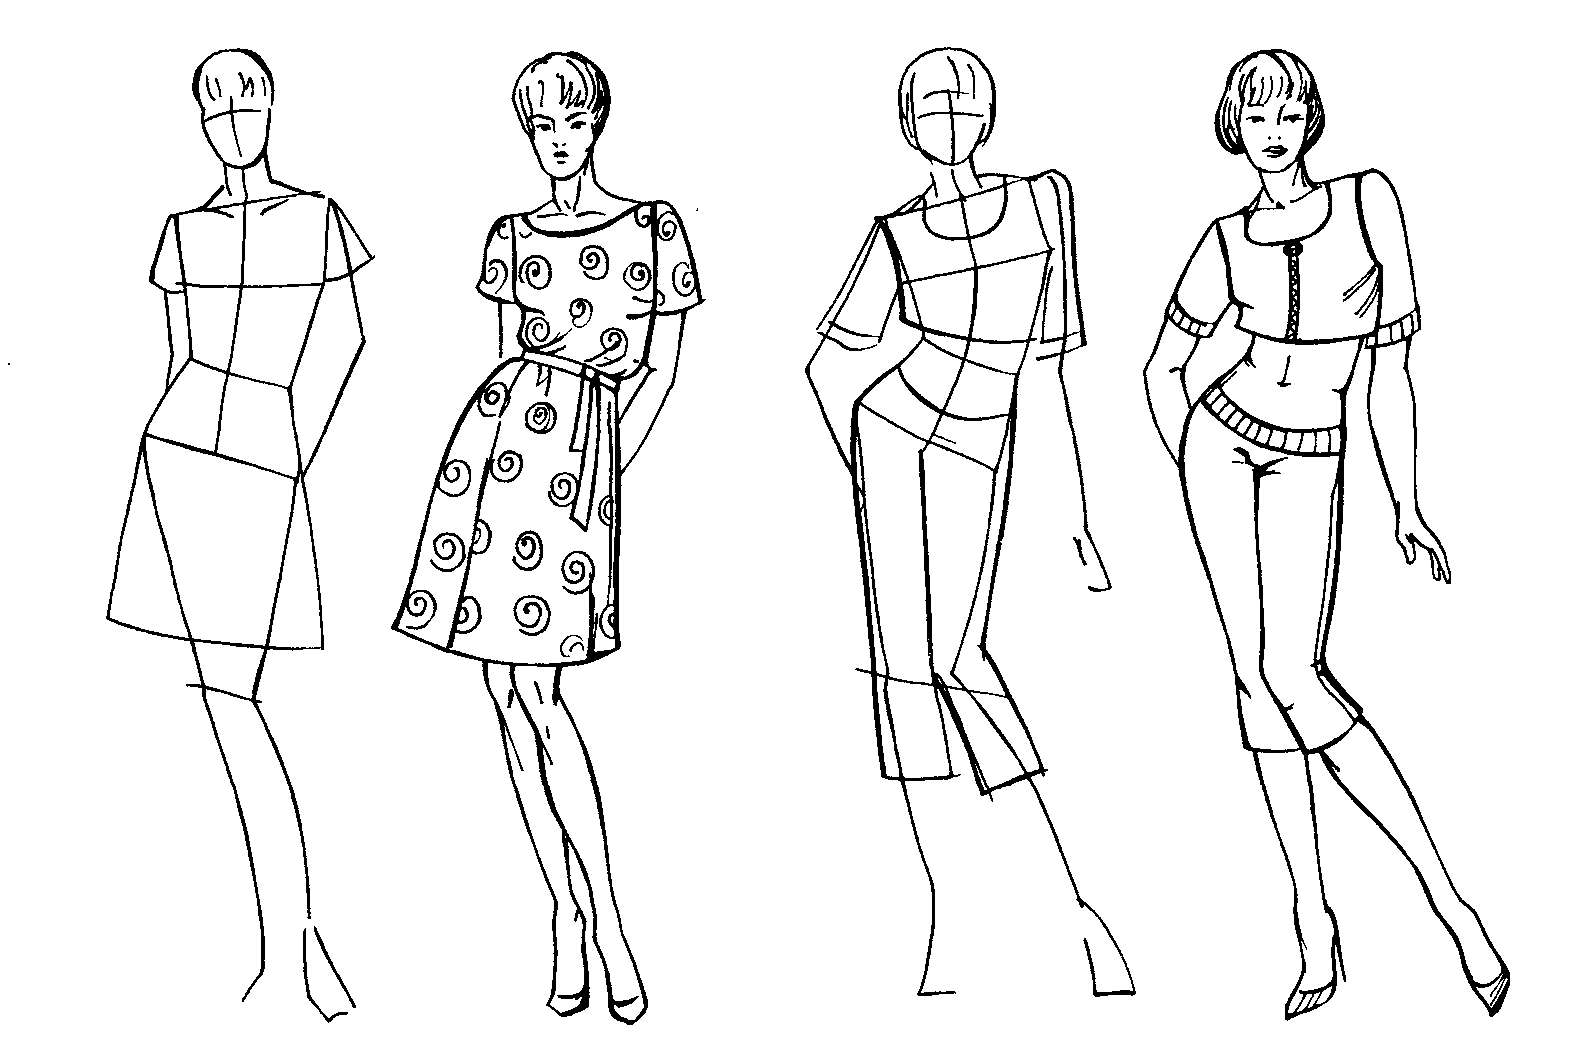 Рисунок изображение фигуры. Эскизы для моделирования одежды. Фигура человека рисунок. Эскиз модели. Уроки рисования моделей одежды.